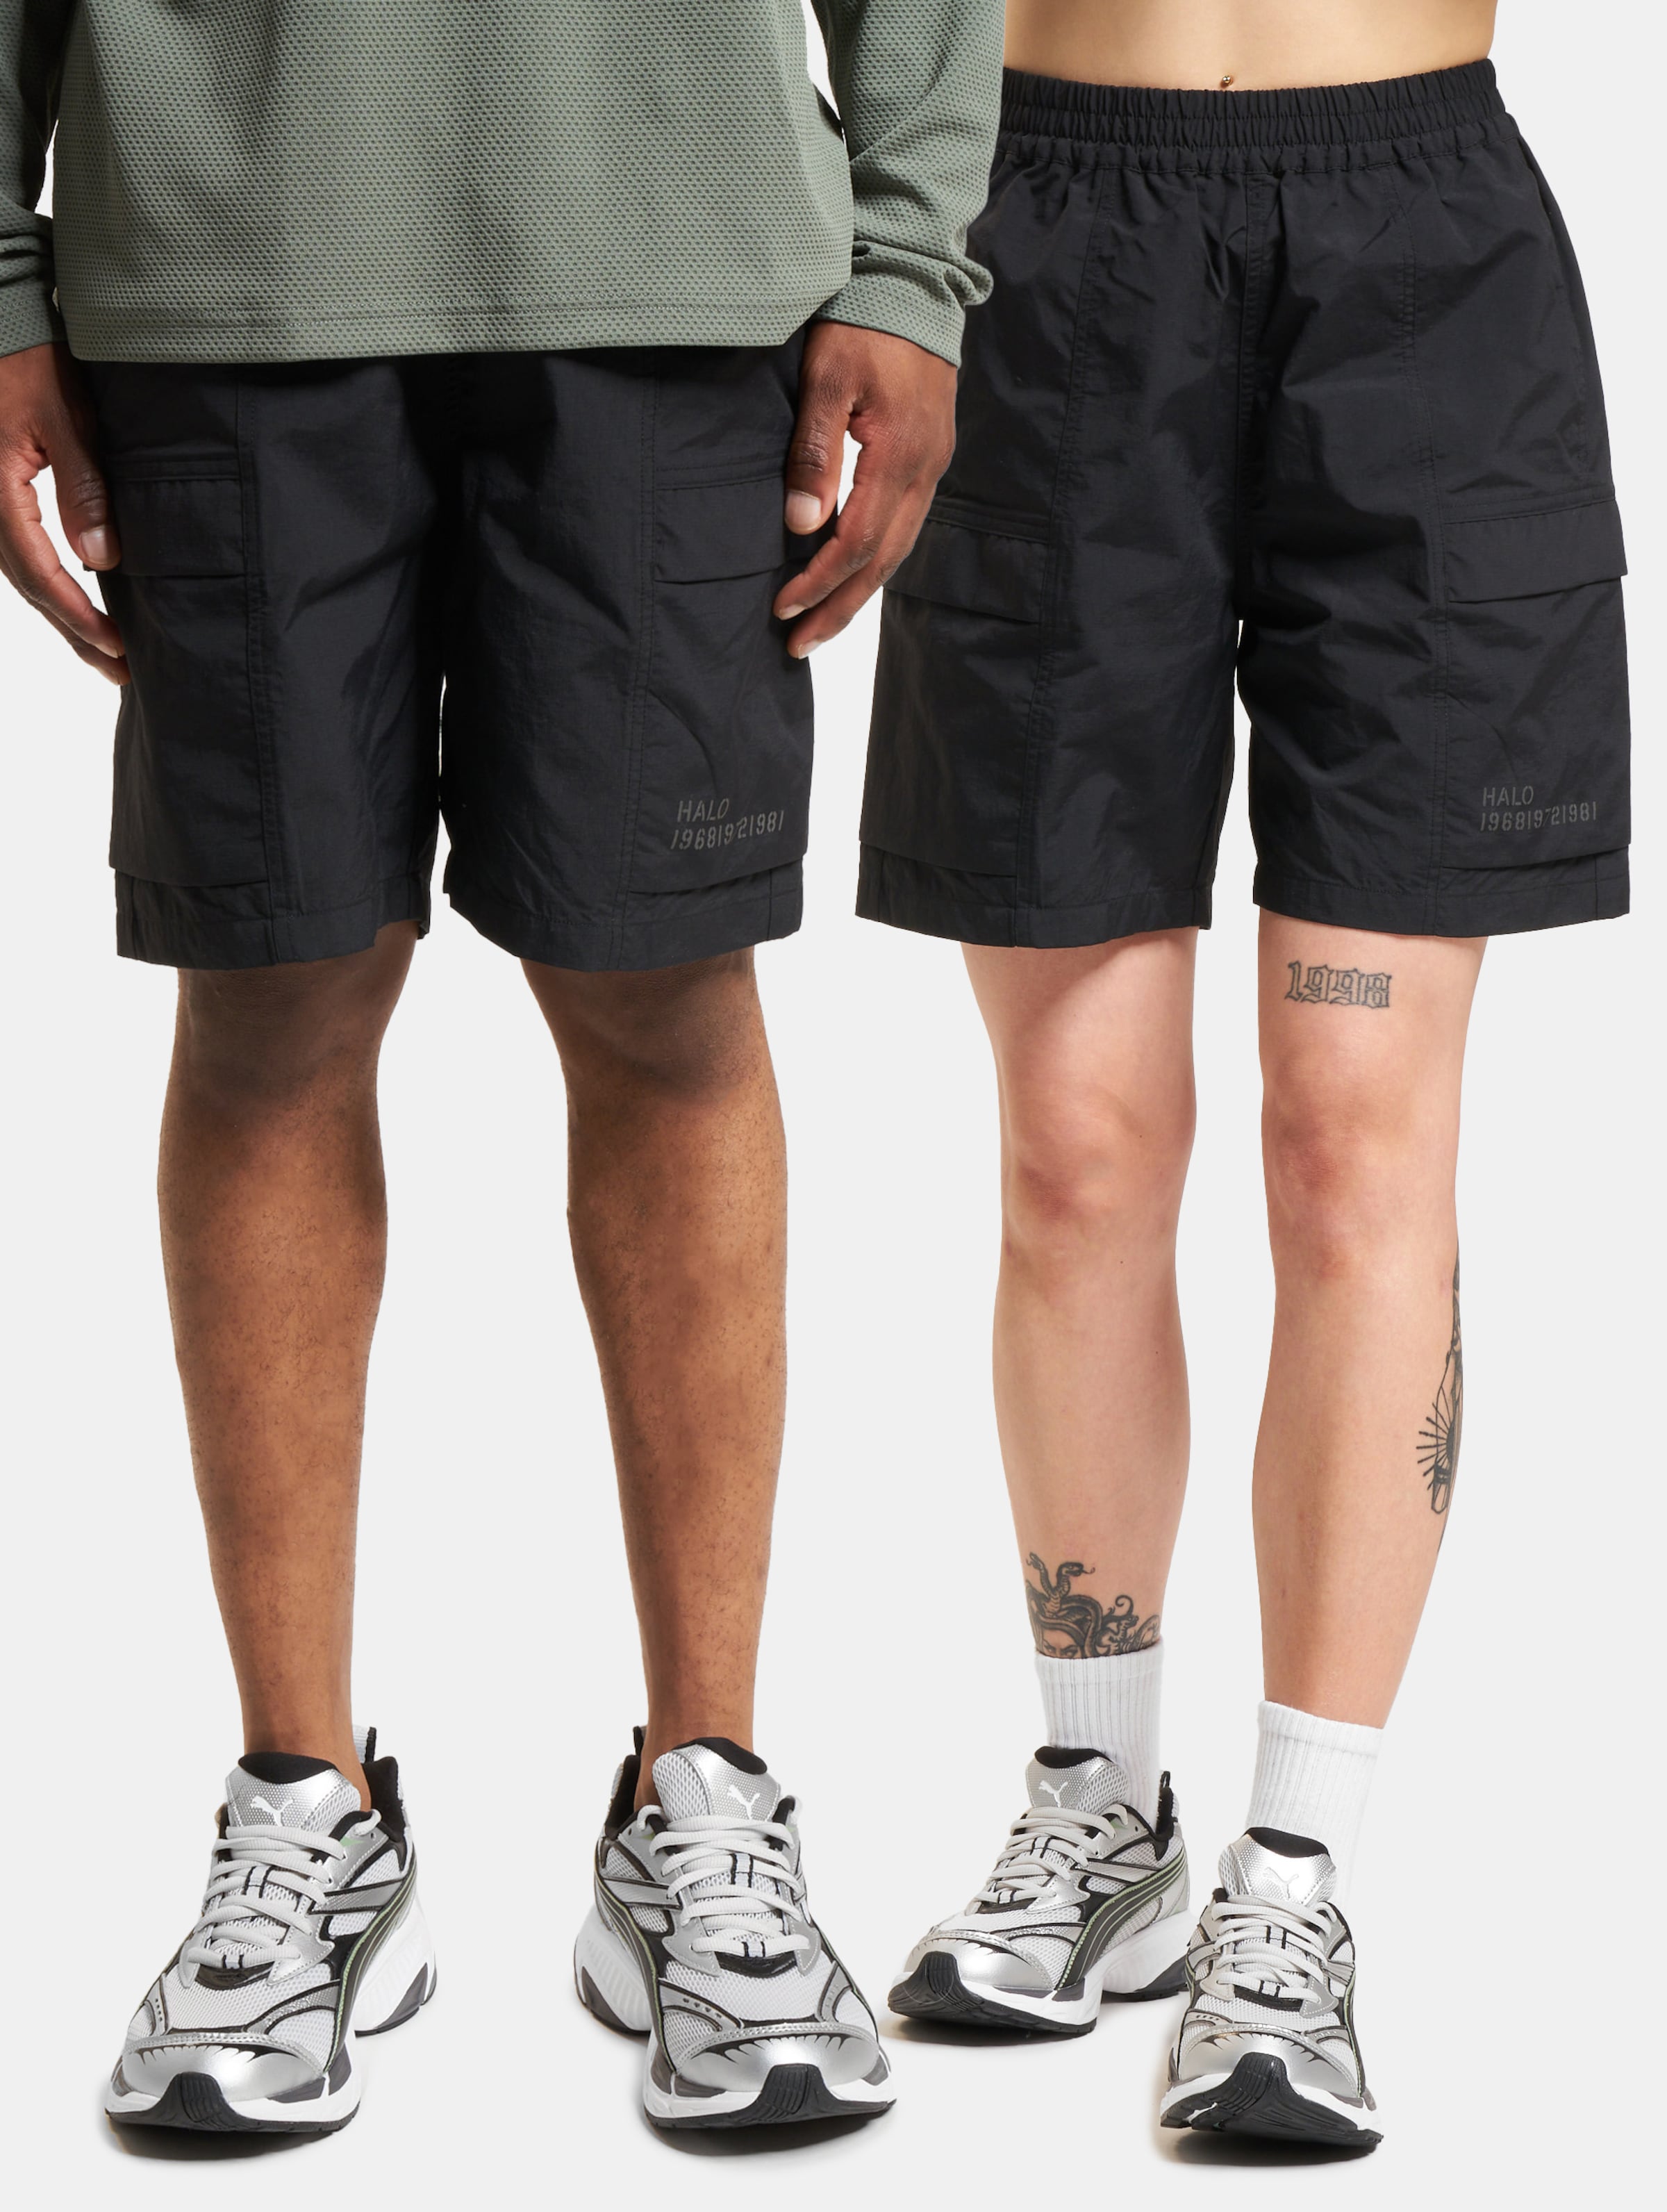 HALO Ranger Shorts Frauen,Männer,Unisex op kleur zwart, Maat S